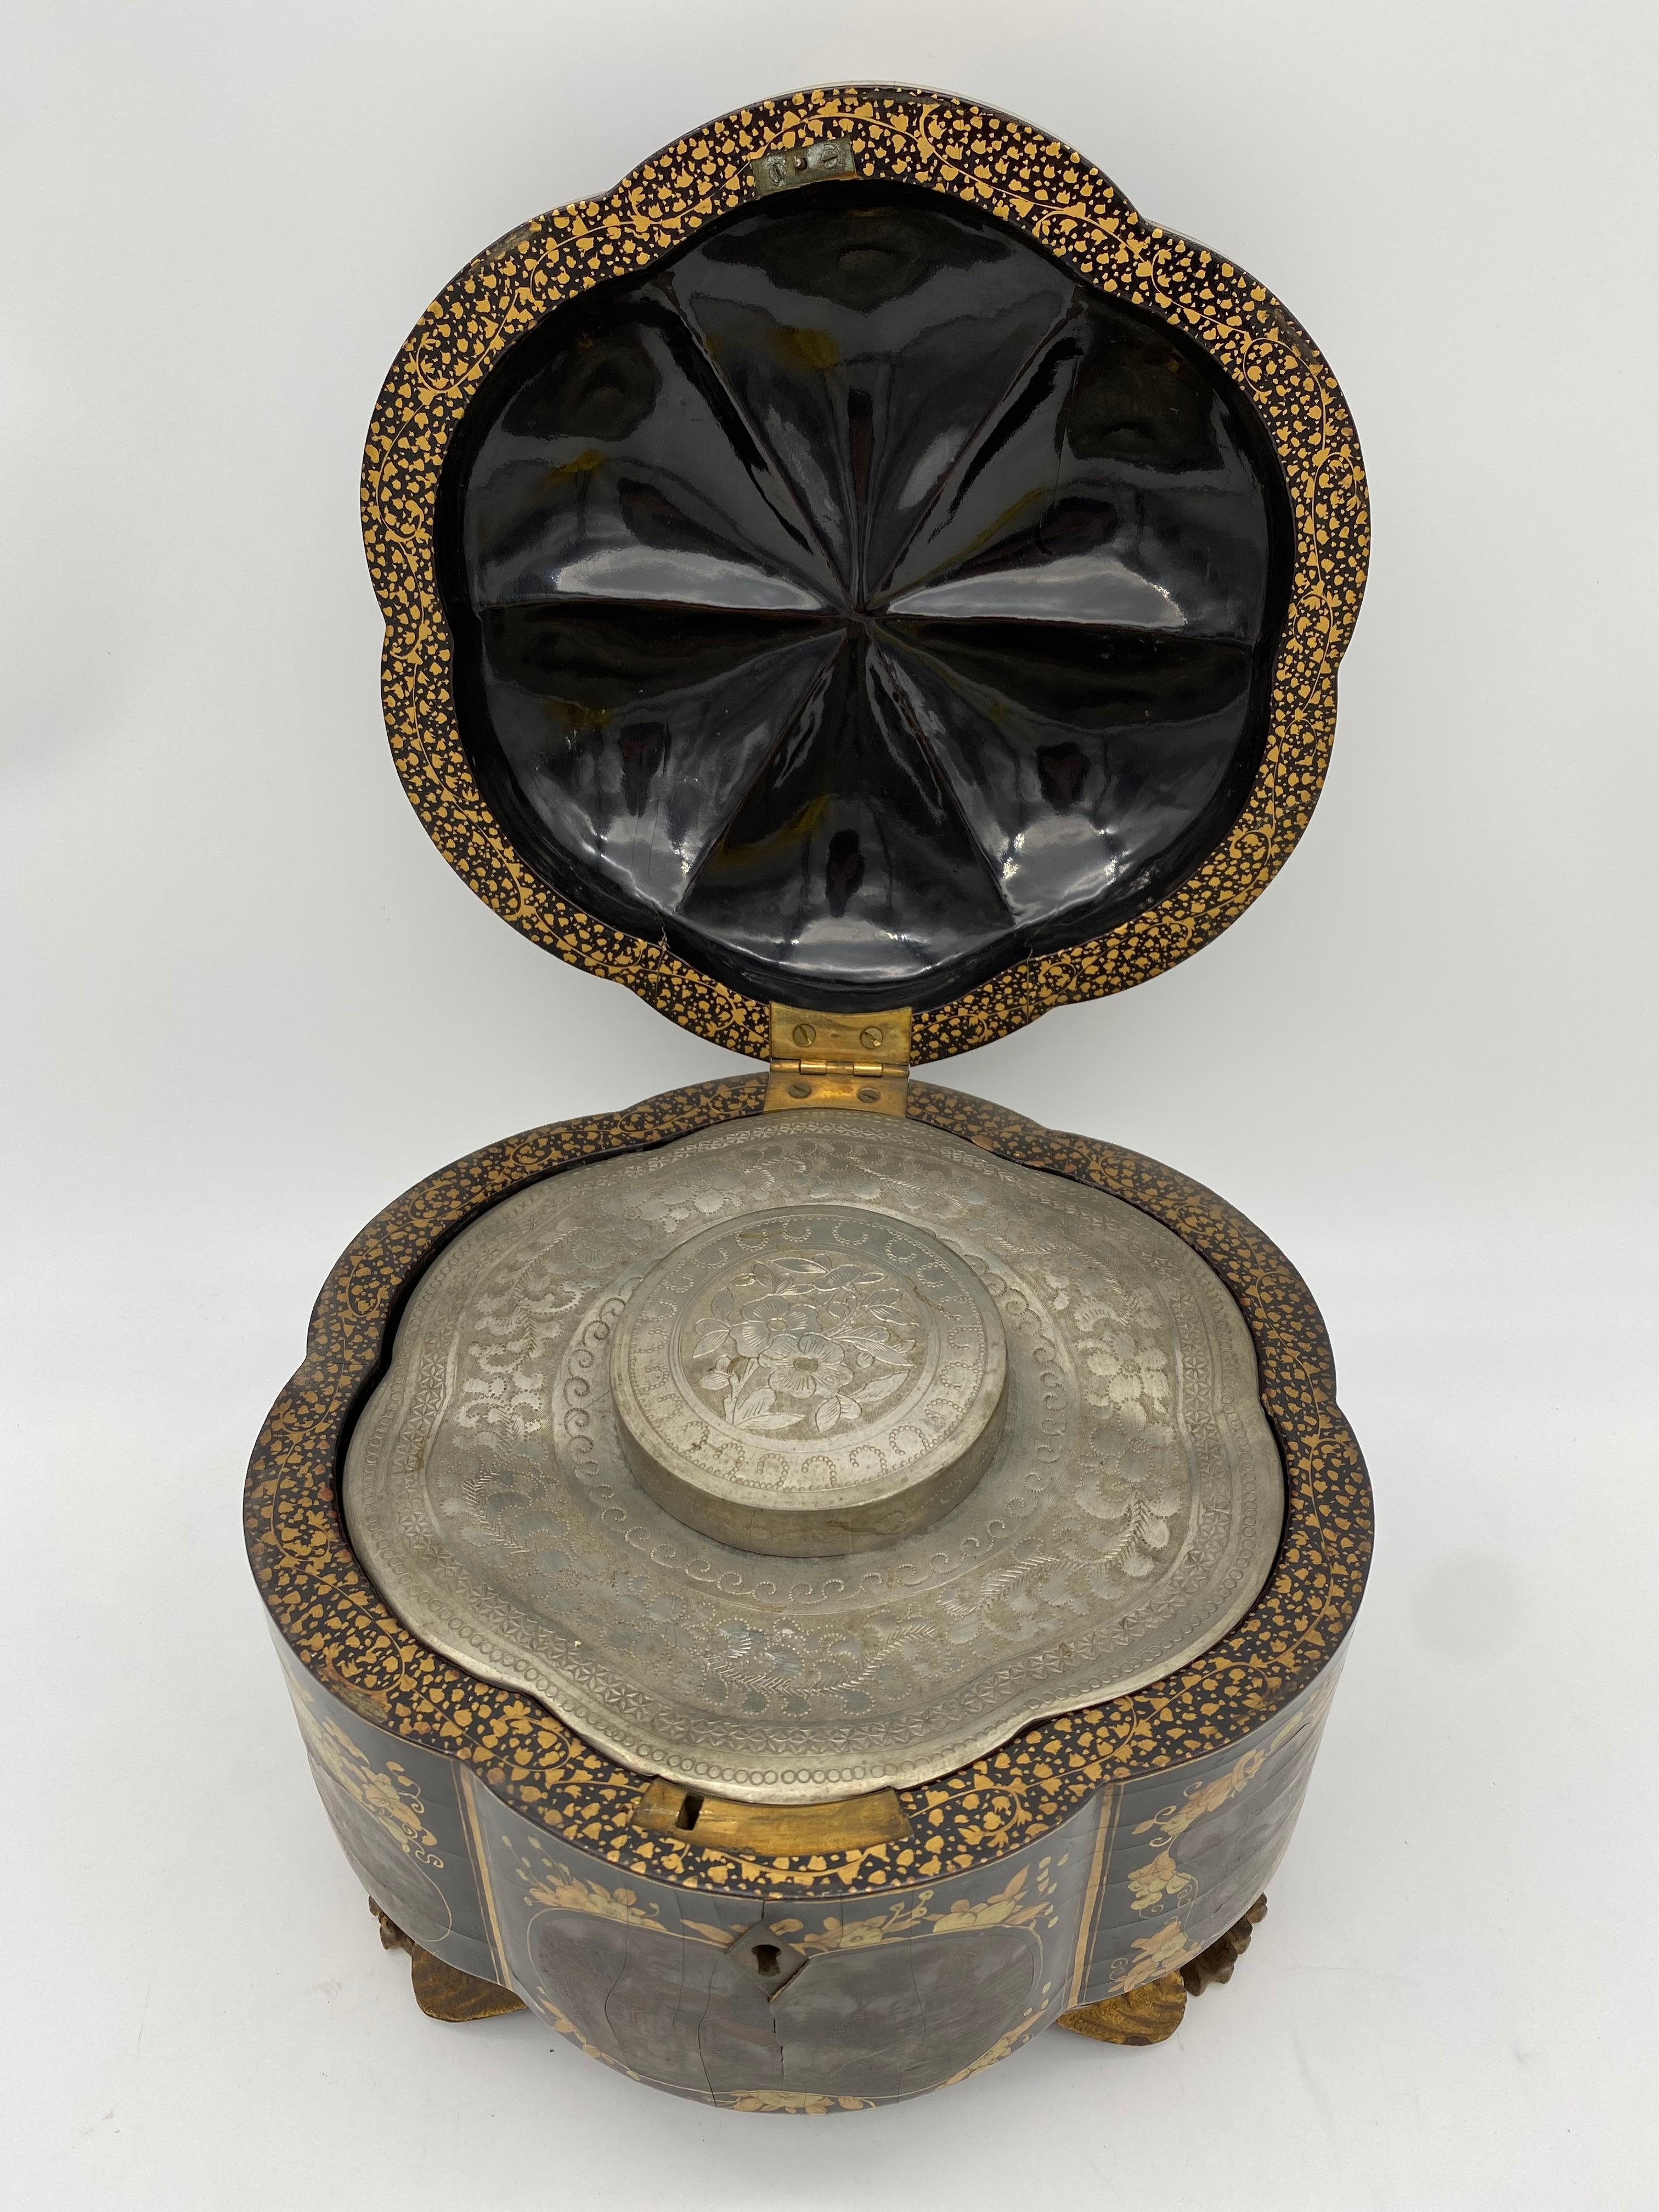 Boite à thé chinoise du 19ème siècle en laque noire dorée avec étain et une clé, le corps de forme spéciale décoré de peinture à la main sur cour, une très belle pièce. Voir plus de photos, mesures : 7